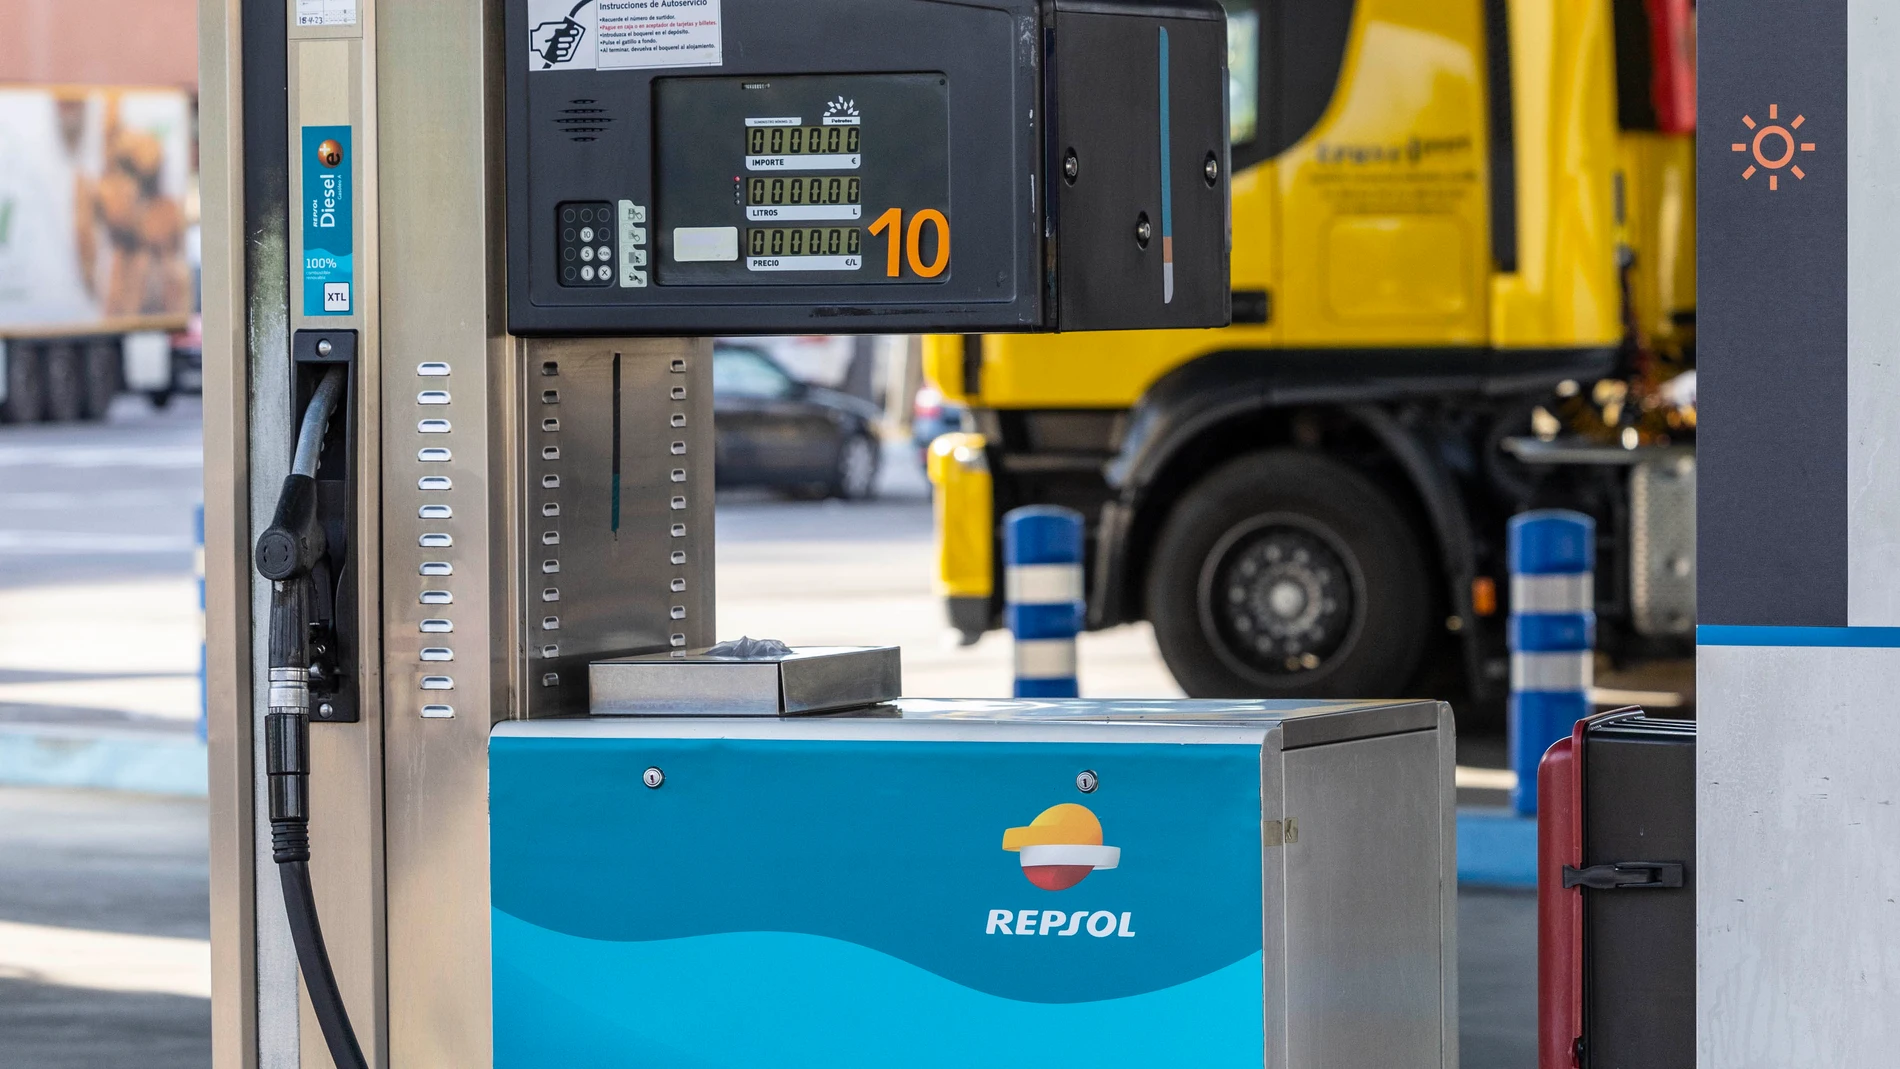 Surtidor de combustible renovable en estación de servicio de Repsol
REPSOL
03/05/2023